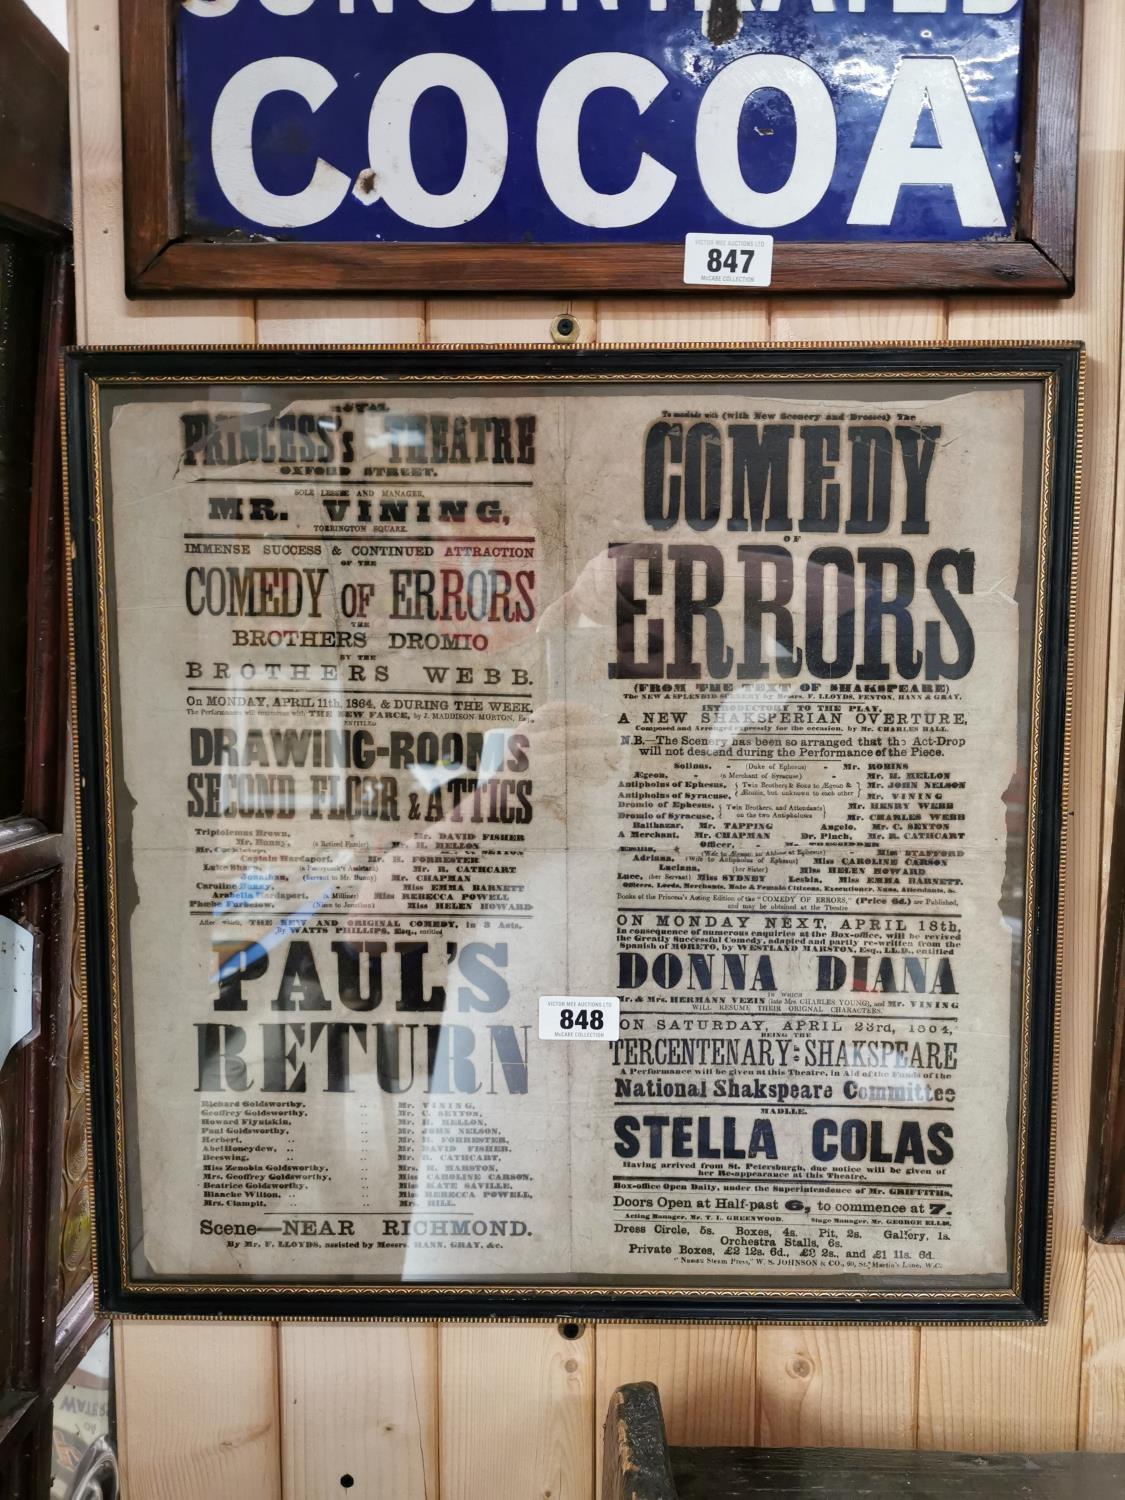 Comedy of Errors framed advertising print.